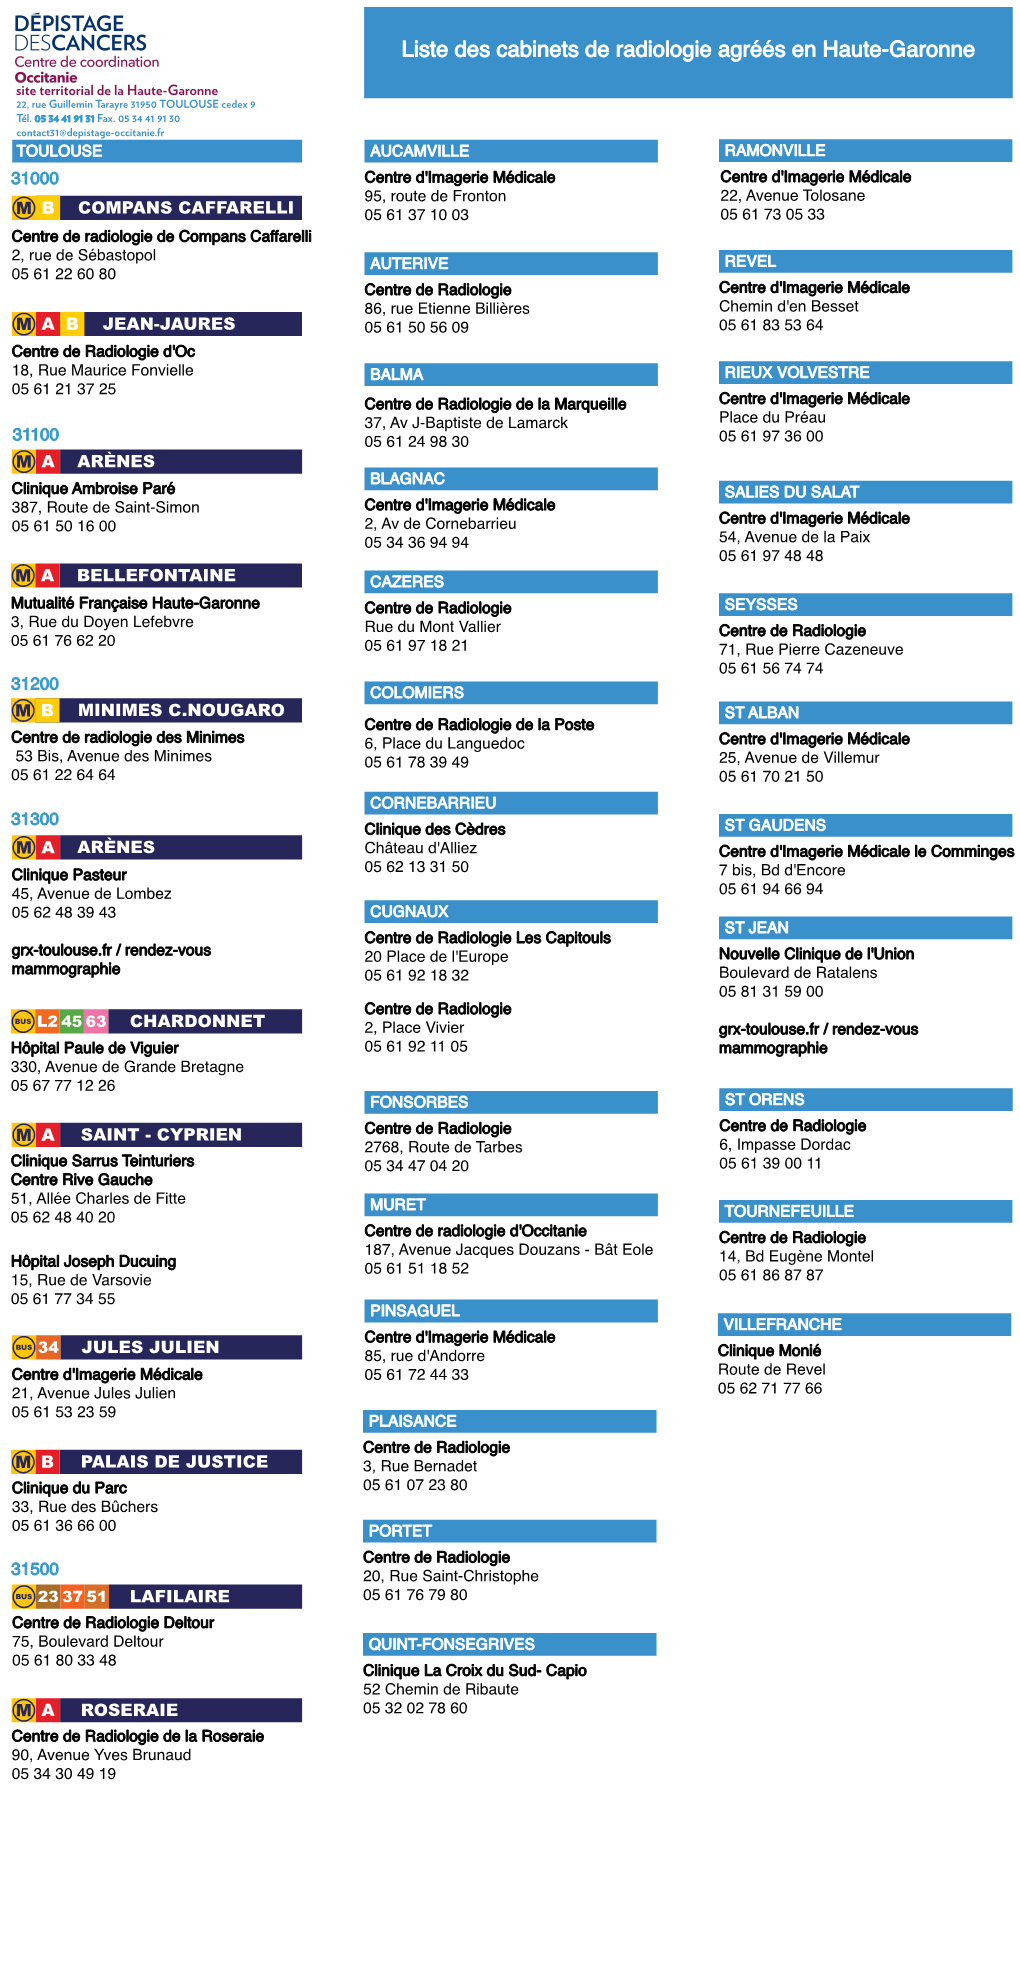 Liste Des Cabinets De Radiologie (RVB) Juin 20